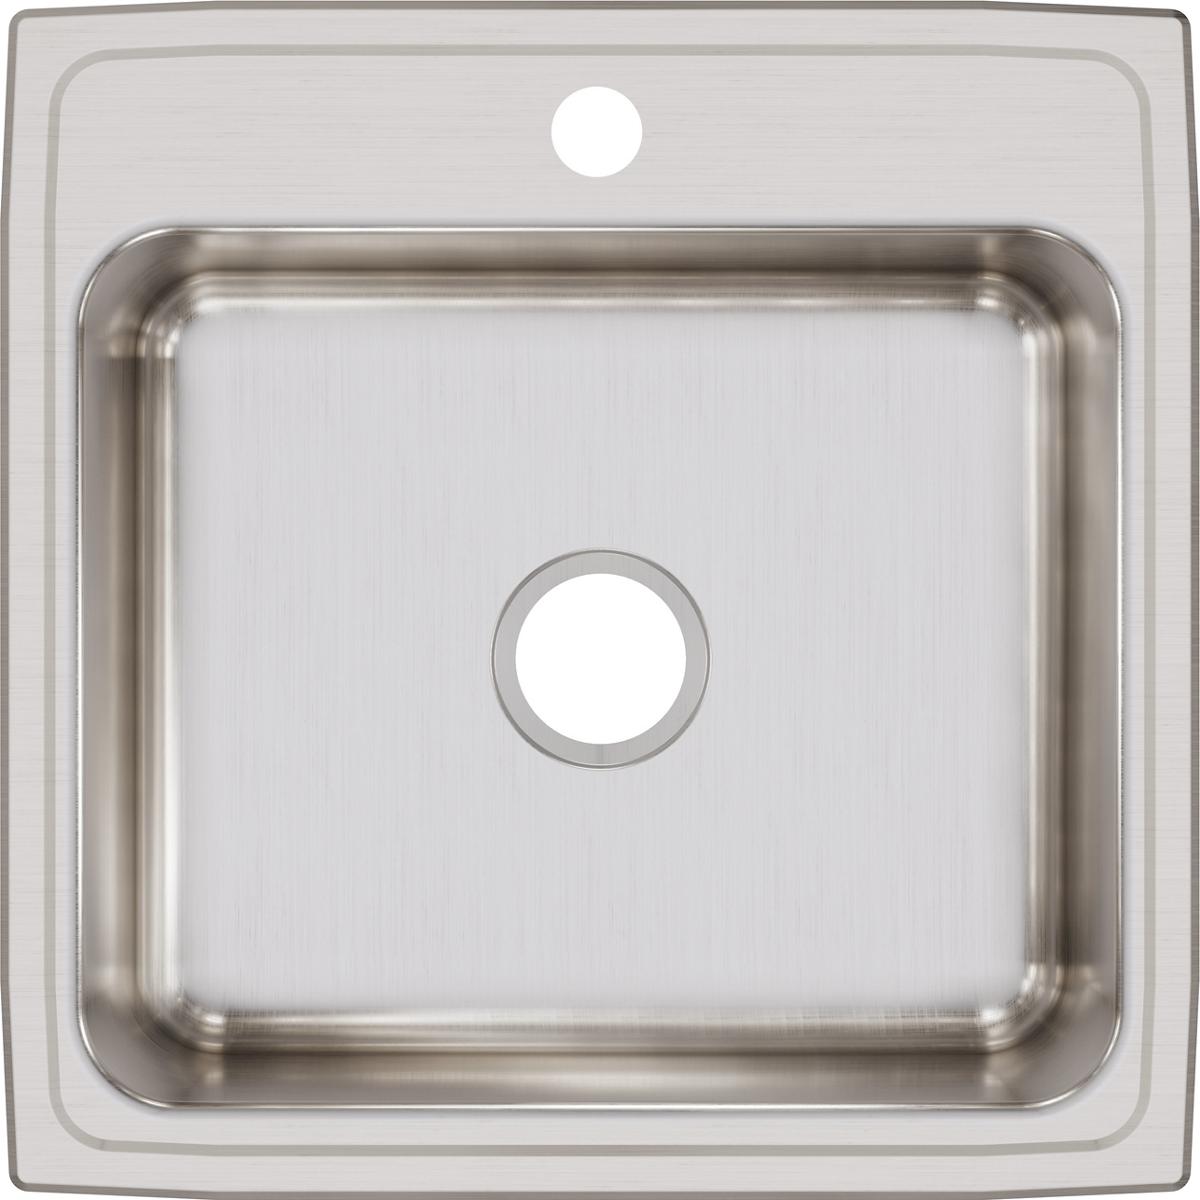 Elkay Lustertone Classic Stainless Steel 22" x 22" x 7-5/8" Single Bowl Drop-in Sink